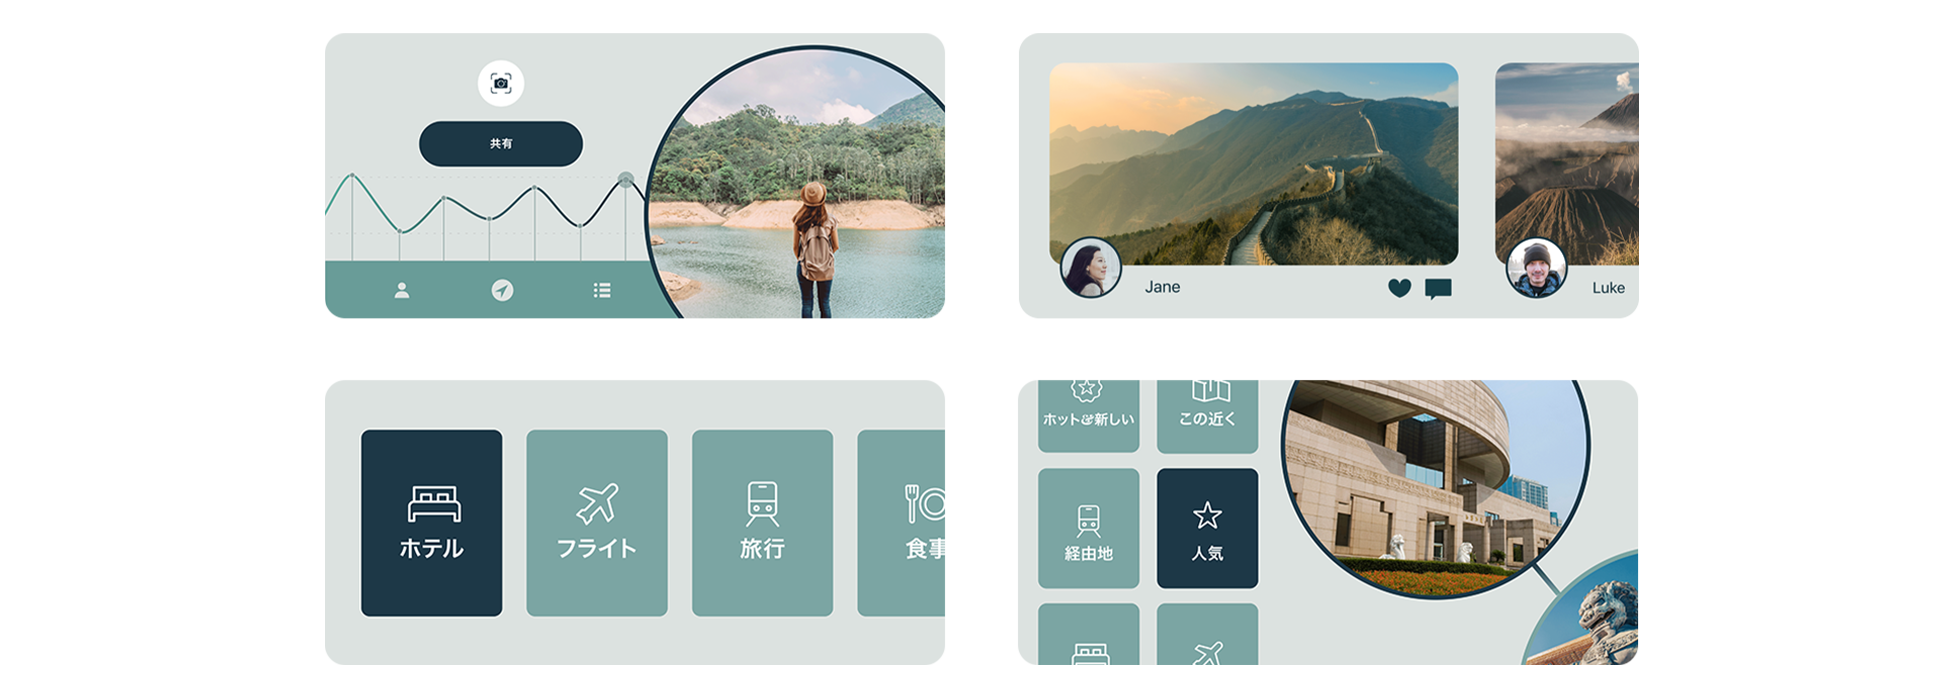 TripTrekというサンプルアプリの4つのスクリーンショット。1つ目のスクリーンショットには、パフォーマンス指標の折れ線グラフの横に、水辺を眺めている人の画像が表示されている。2つ目には、Janeのユーザープロフィールの上に、万里の長城の写真が表示されている。3つ目には、「Hotels」（ホテル）、「Flights」（フライト）、「Travel」（旅行）、「Dining」（食事）という4つのタイルが表示されている。4つ目には、上海博物館の画像の横に6つのタイルが表示されており、そのうちの「Popular」（人気）というタイルが強調表示されている。